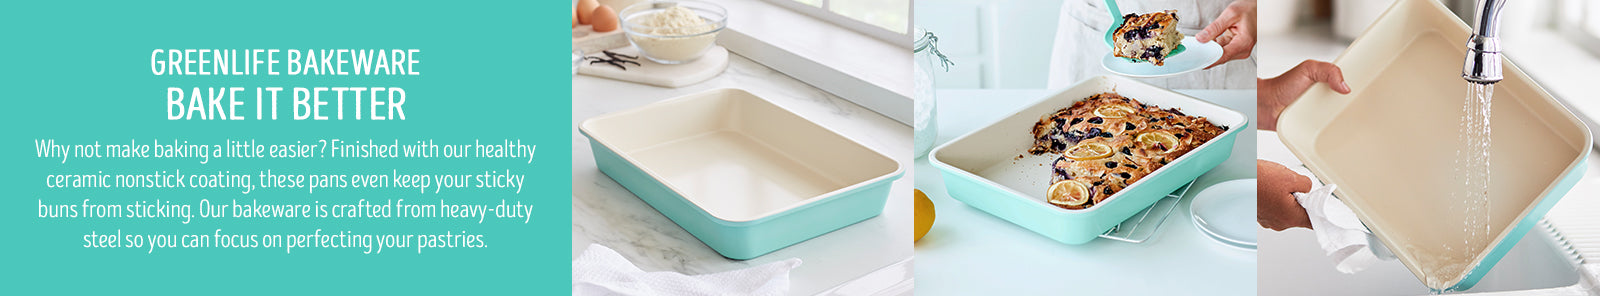 GreenLife Bakeware Healthy Ceramic Nonstick, 13 x 9 Rectangular Cake  Baking Pan, PFAS-Free, Turquoise